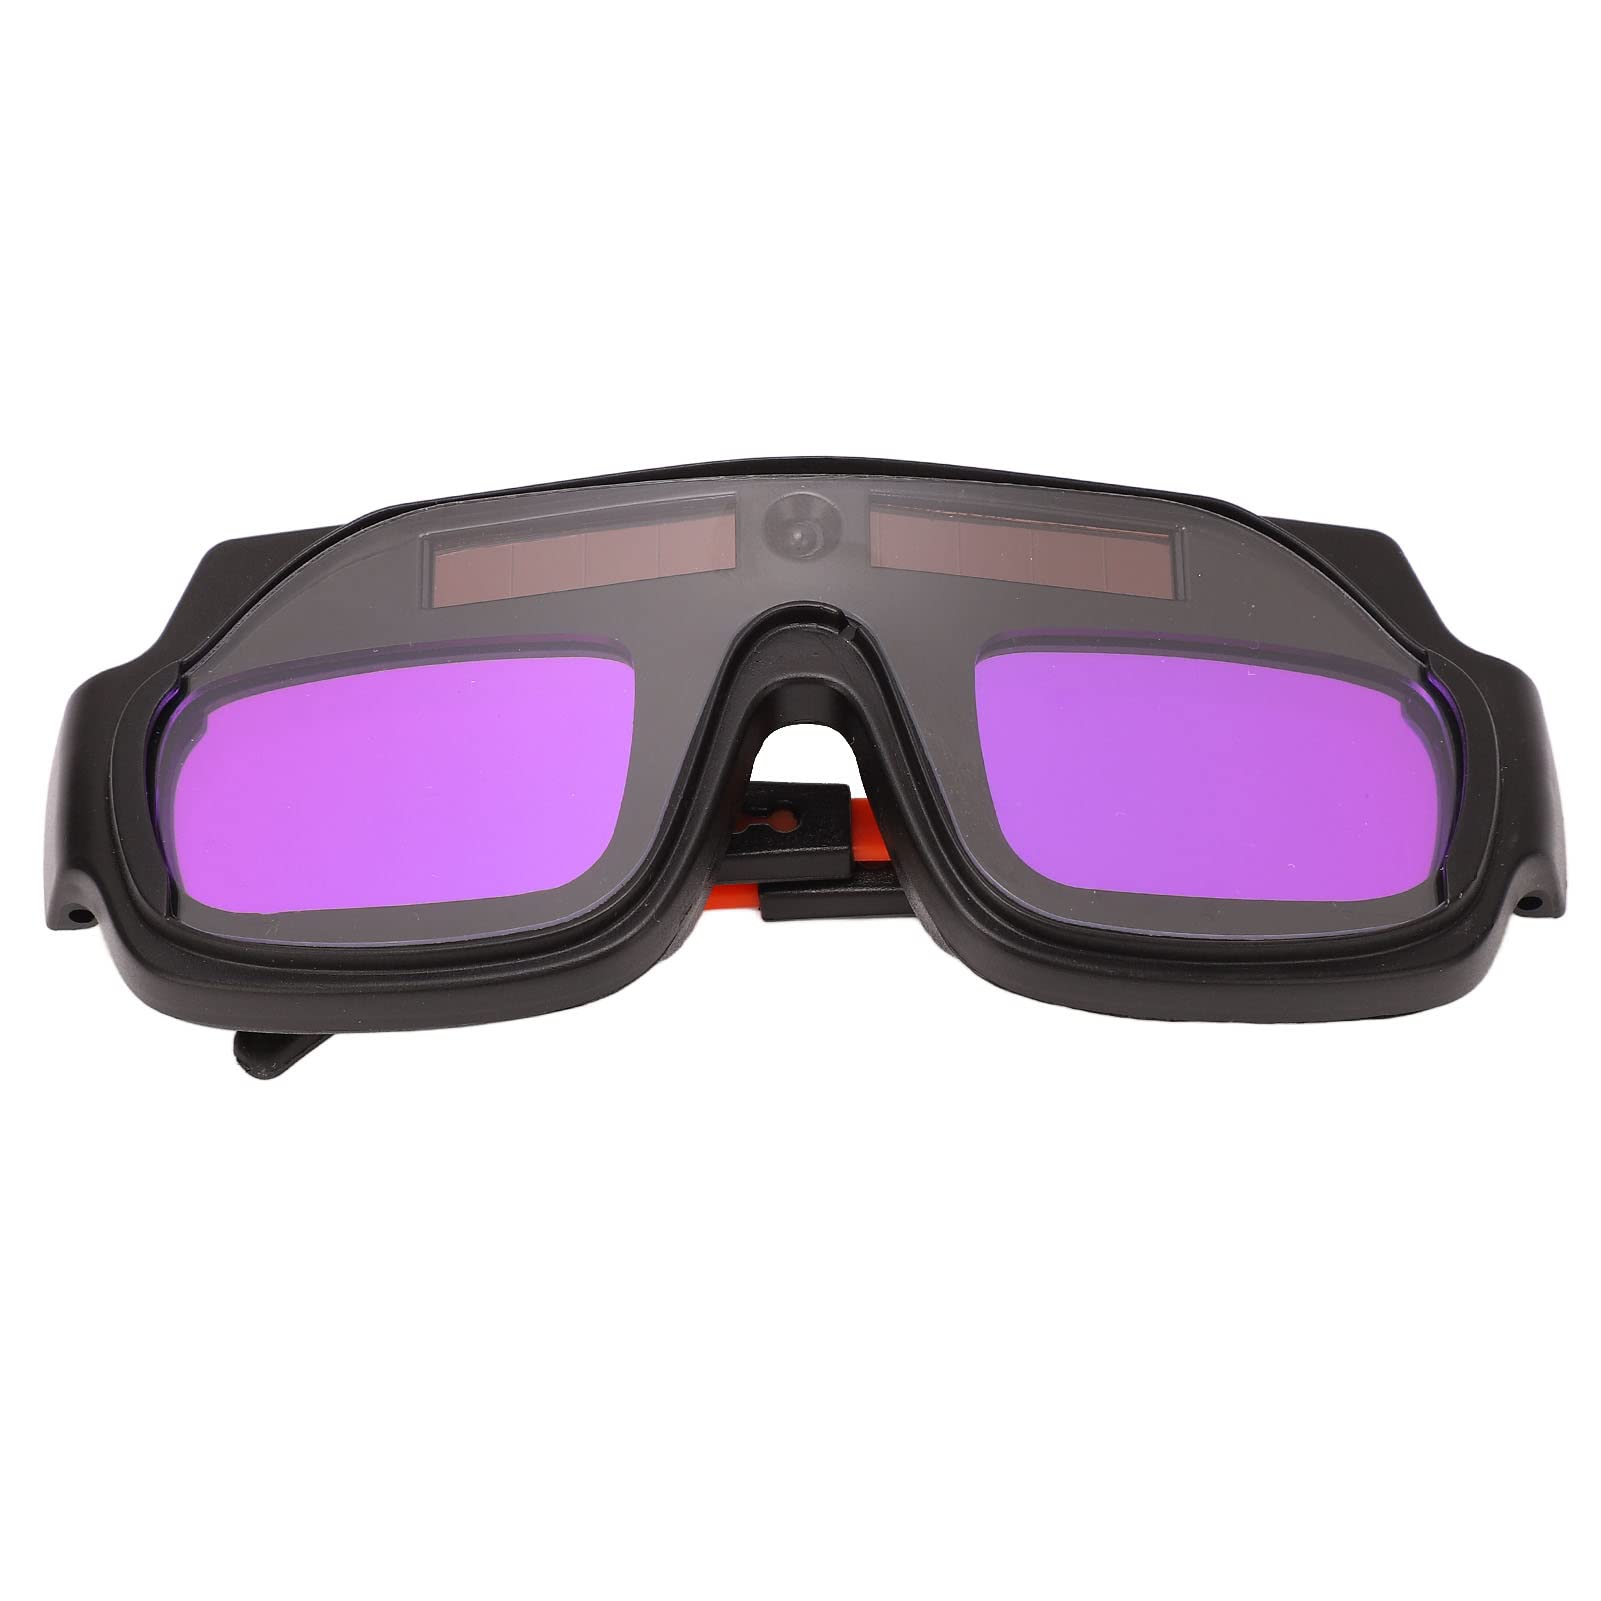 Auto Darkening Welding Goggle Solar Eye Protective Block Slag PC Glasses for Welder Soldering Filter Harmful Light